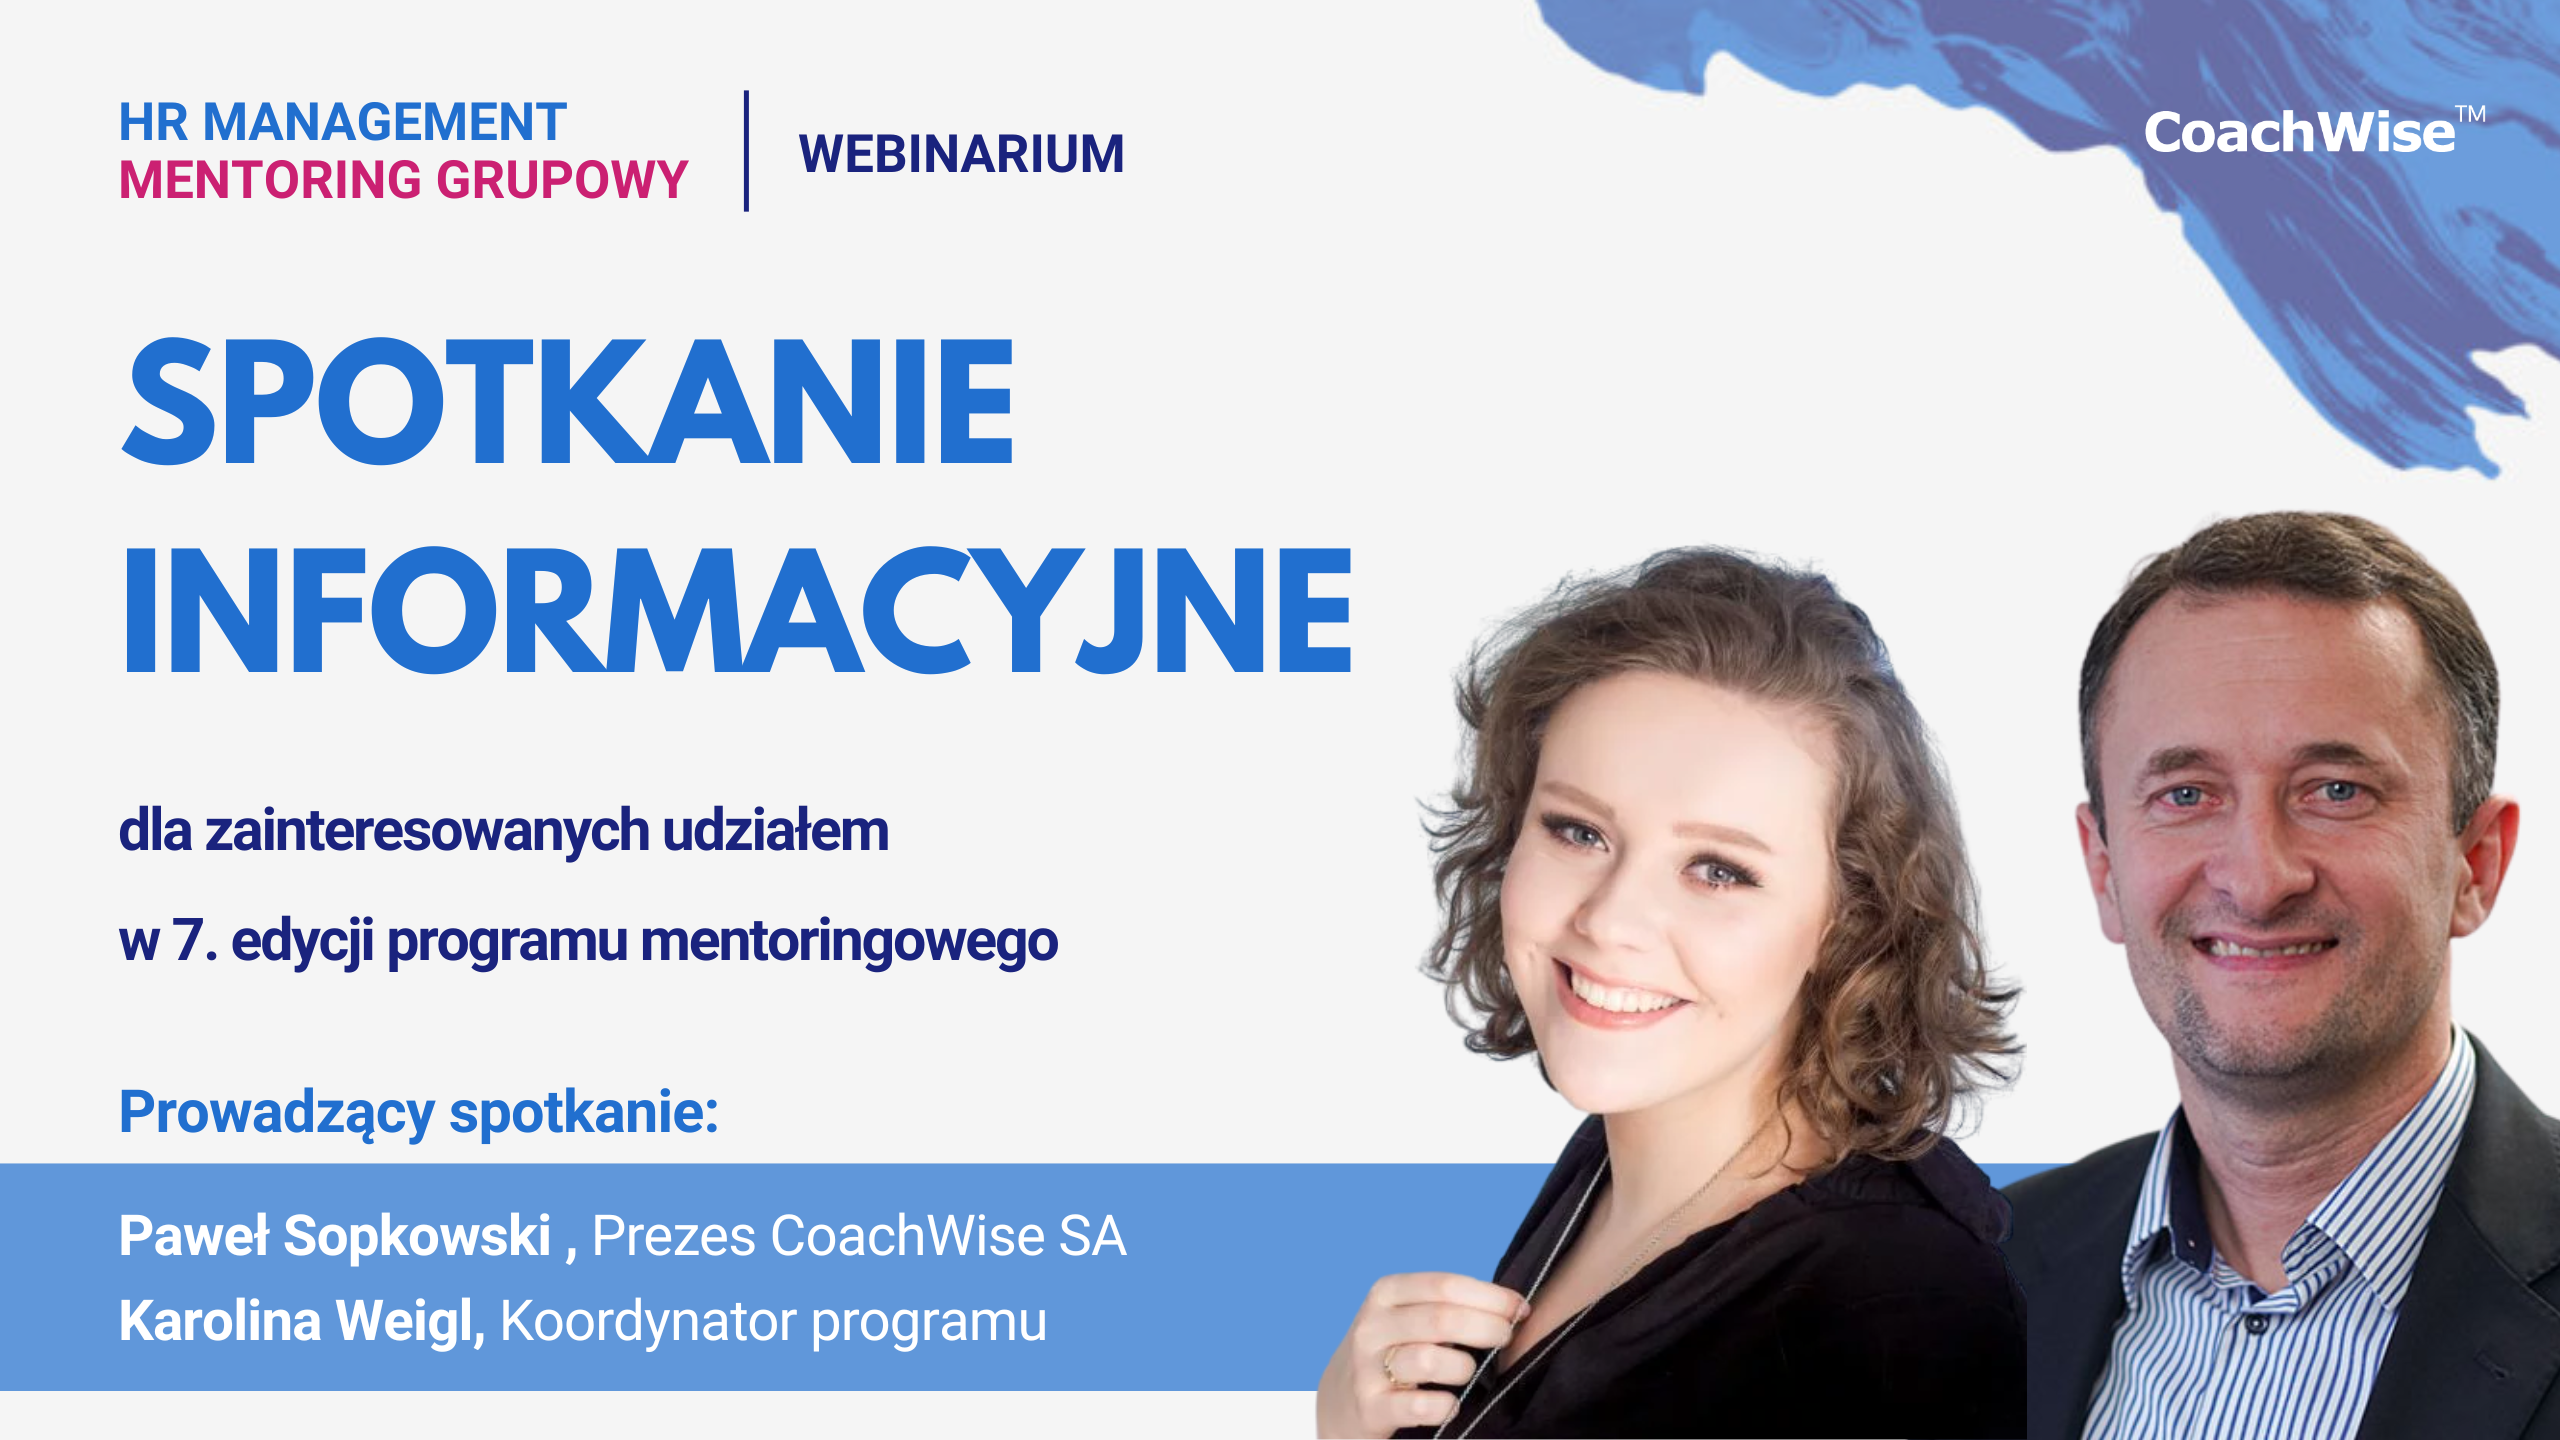 Spotkanie informacyjne HR Mentoring Grupowy Karolina Weigl Paweł Sopkowski Coachwise